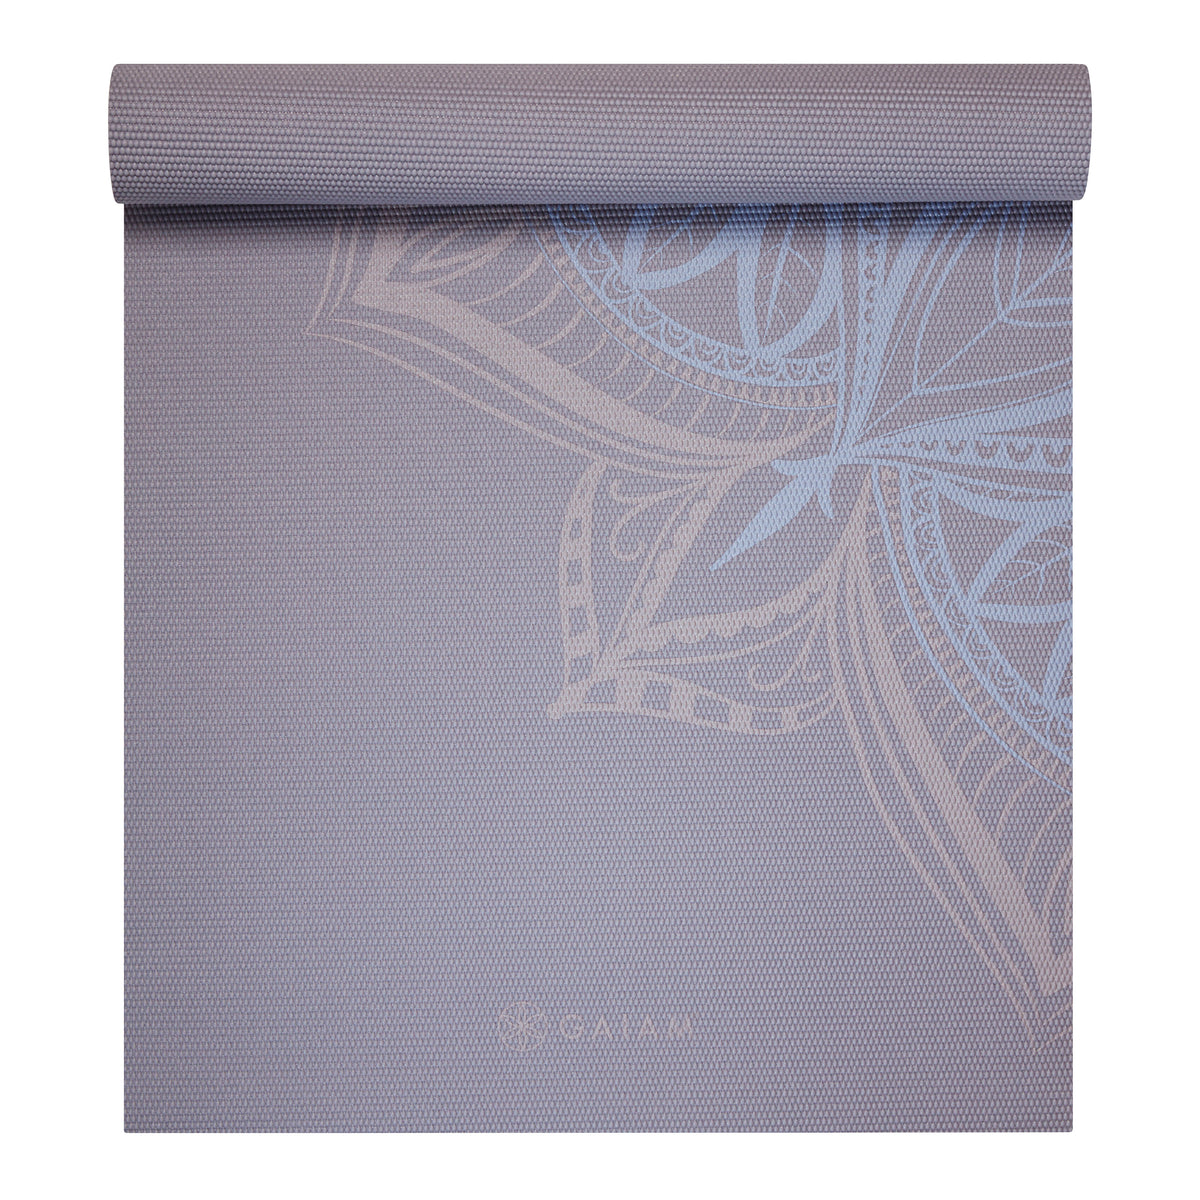 Sundial Yoga Mat (5mm) – GetACTV